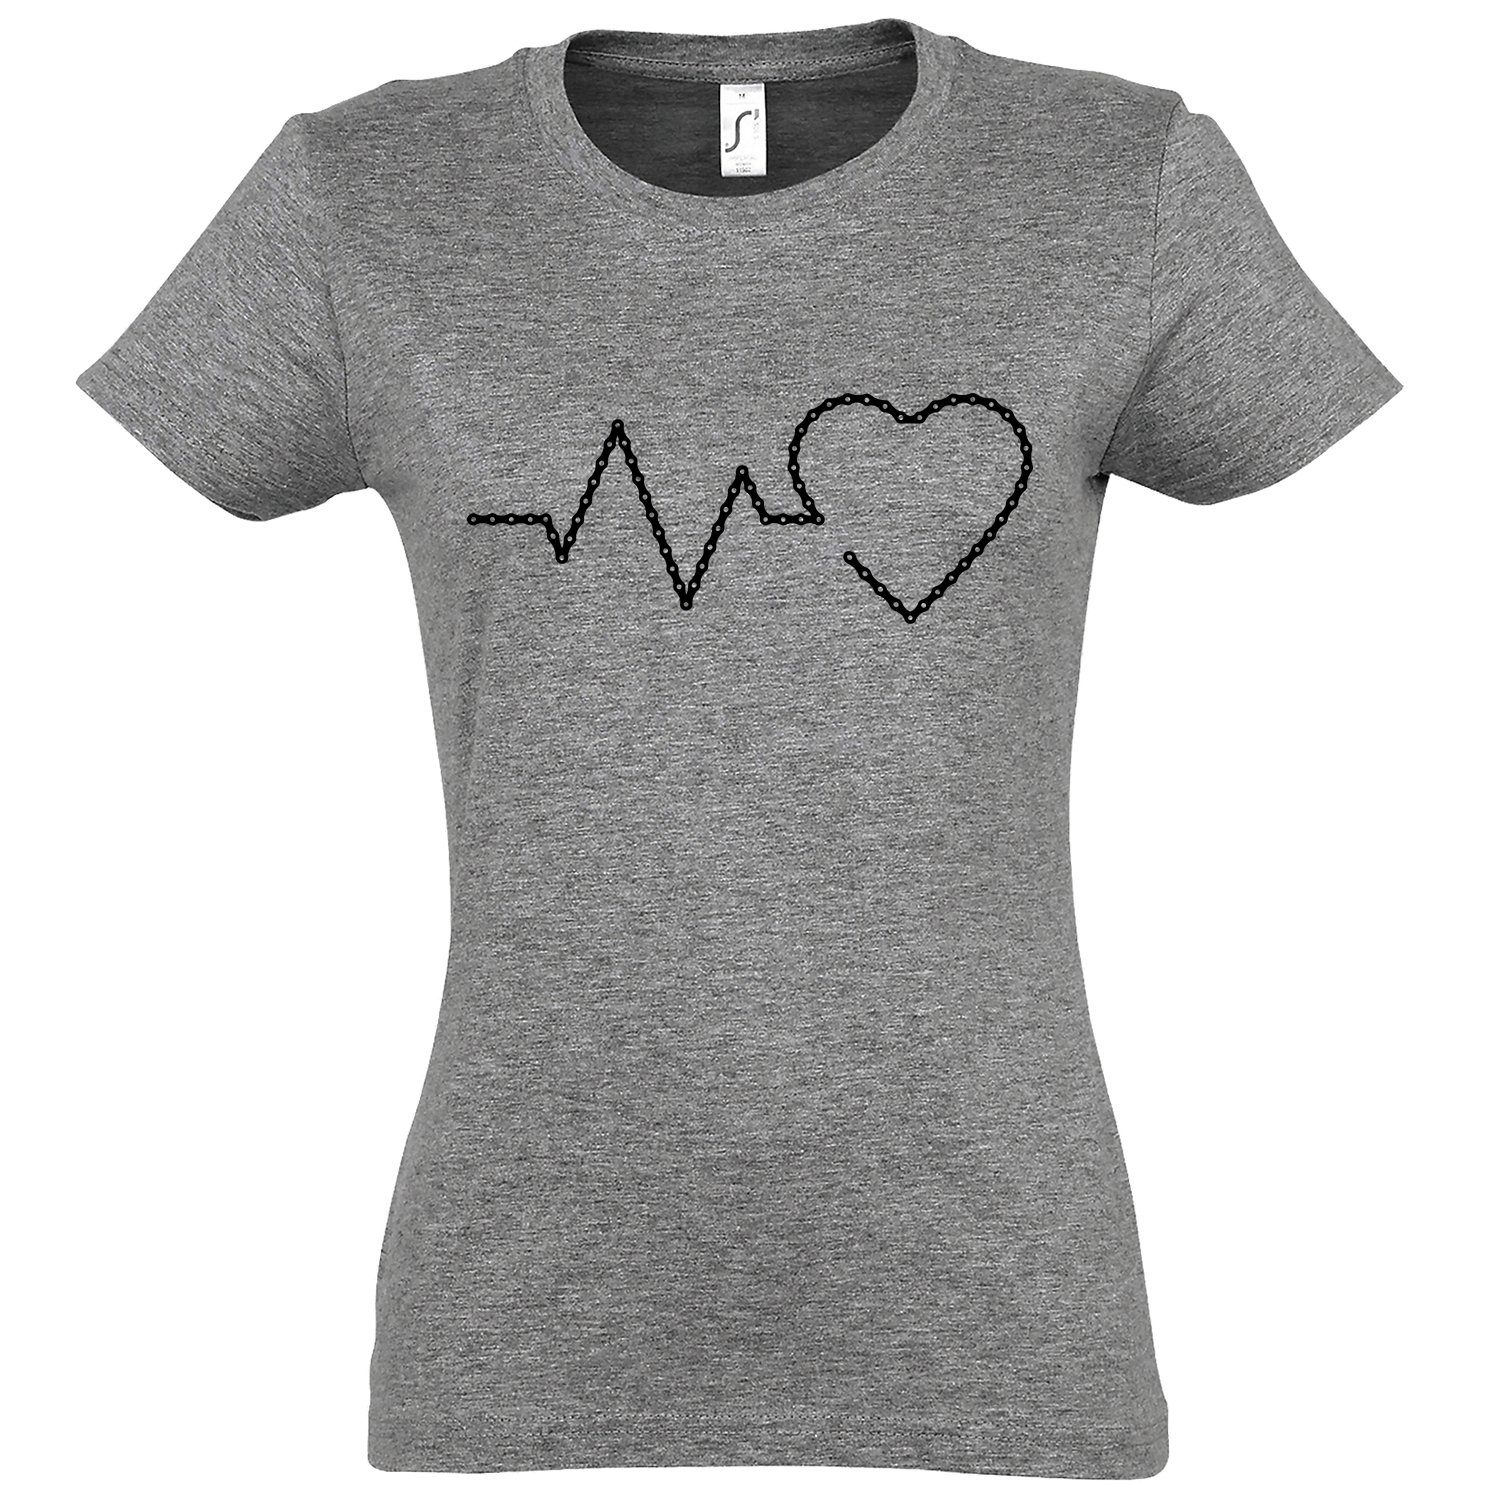 Youth Designz T-Shirt Heartbeat Fahrradkette Damen Shirt mit trendigem Frontprint Grau